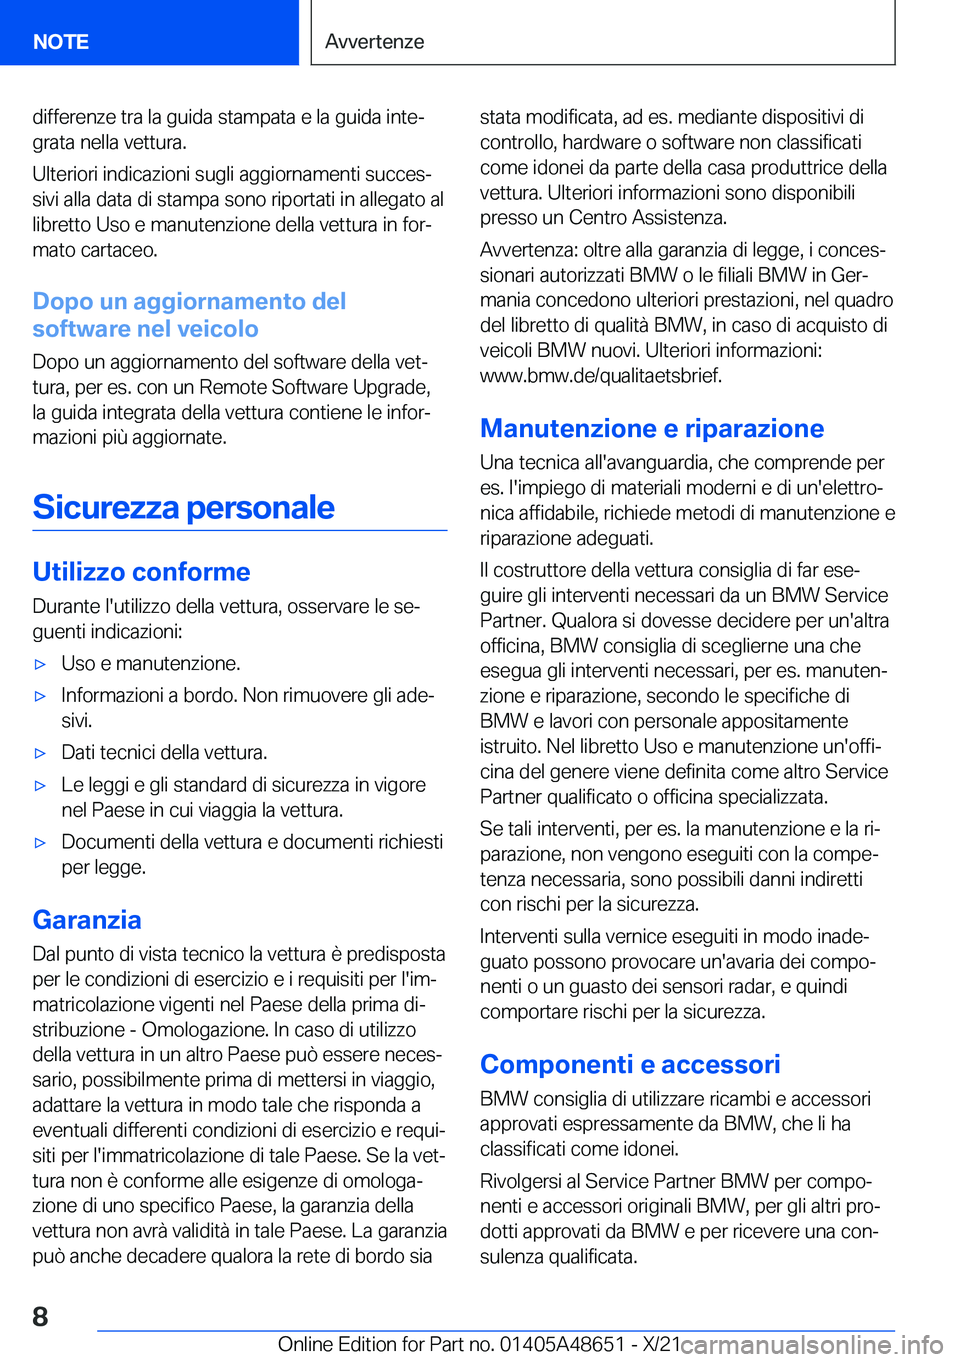 BMW 3 SERIES 2022  Libretti Di Uso E manutenzione (in Italian) �d�i�f�f�e�r�e�n�z�e��t�r�a��l�a��g�u�i�d�a��s�t�a�m�p�a�t�a��e��l�a��g�u�i�d�a��i�n�t�eª�g�r�a�t�a��n�e�l�l�a��v�e�t�t�u�r�a�.
�U�l�t�e�r�i�o�r�i��i�n�d�i�c�a�z�i�o�n�i��s�u�g�l�i��a�g